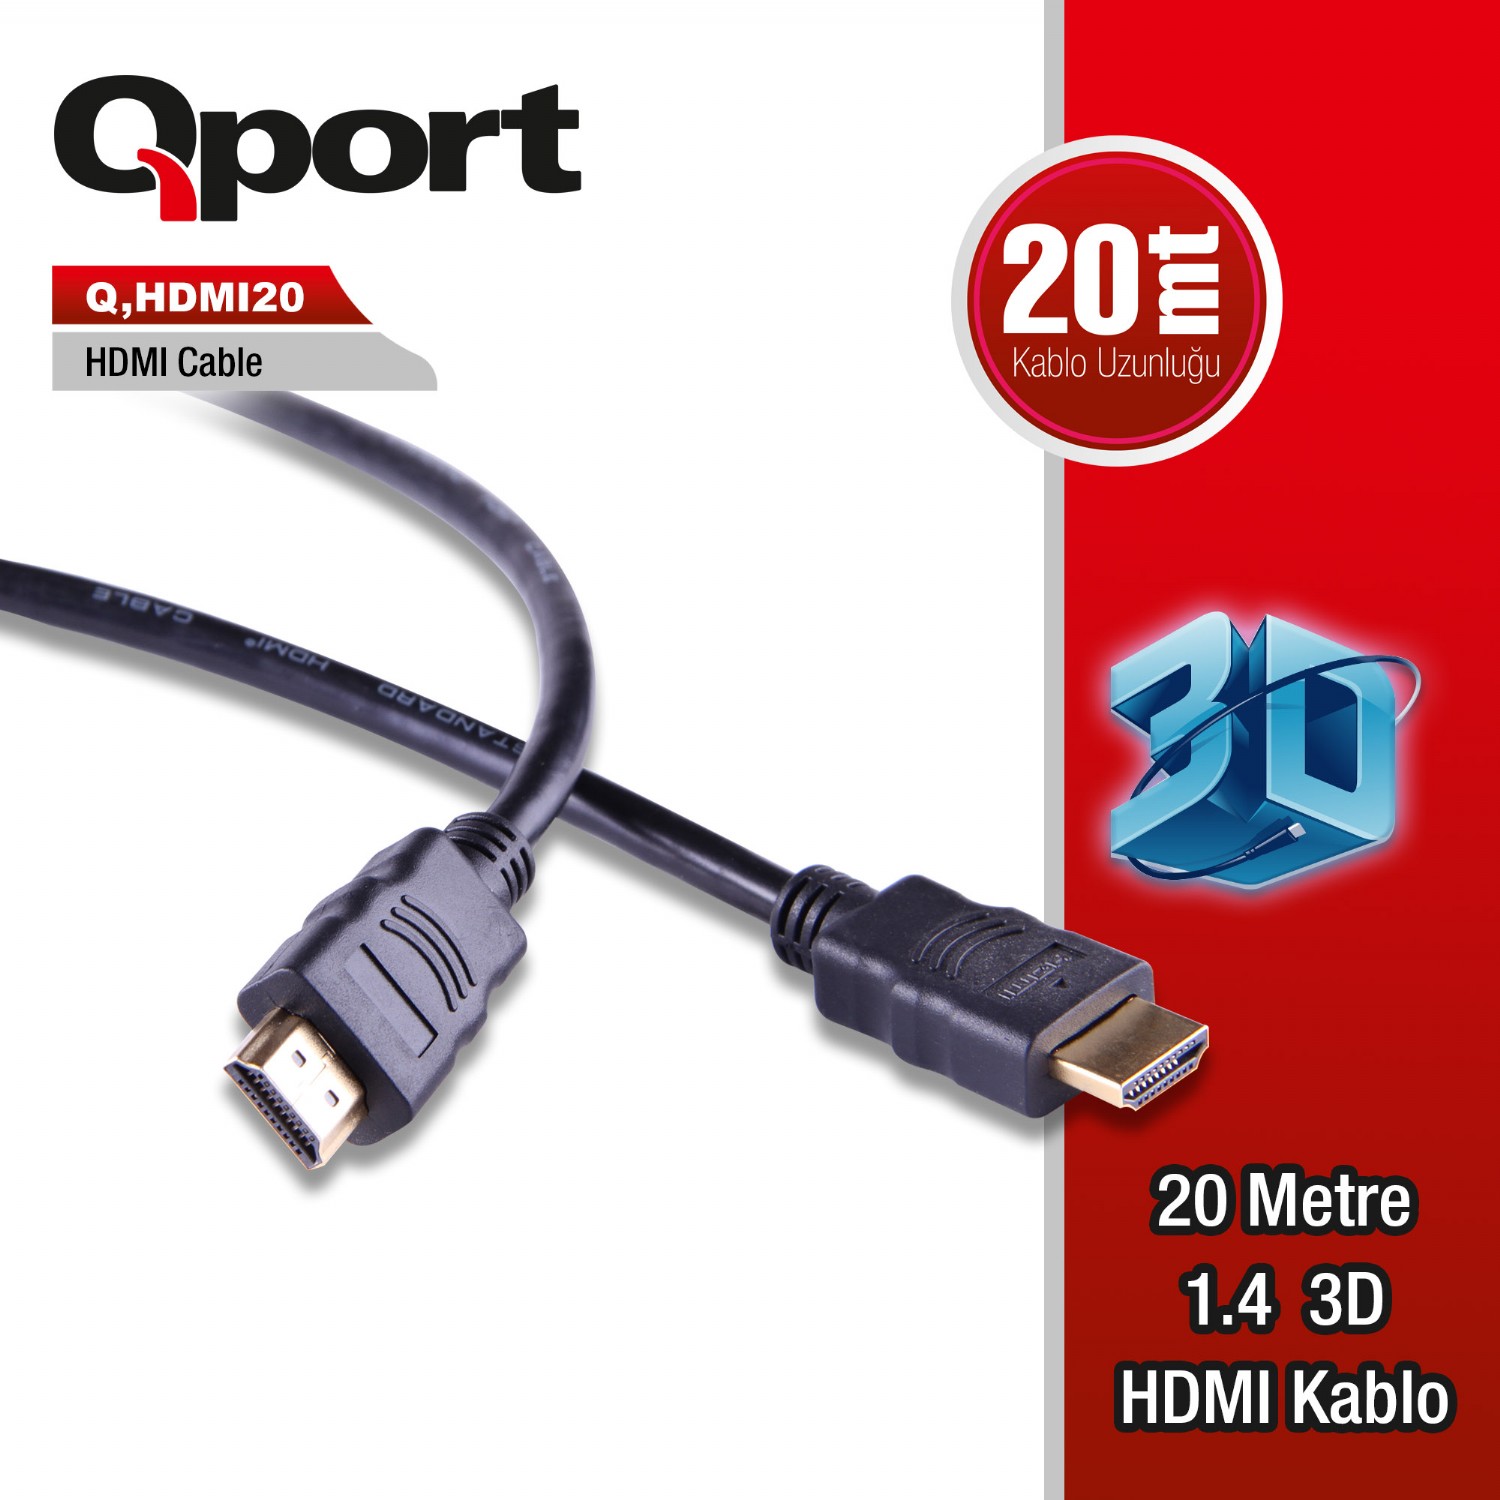 Q-HDMI20